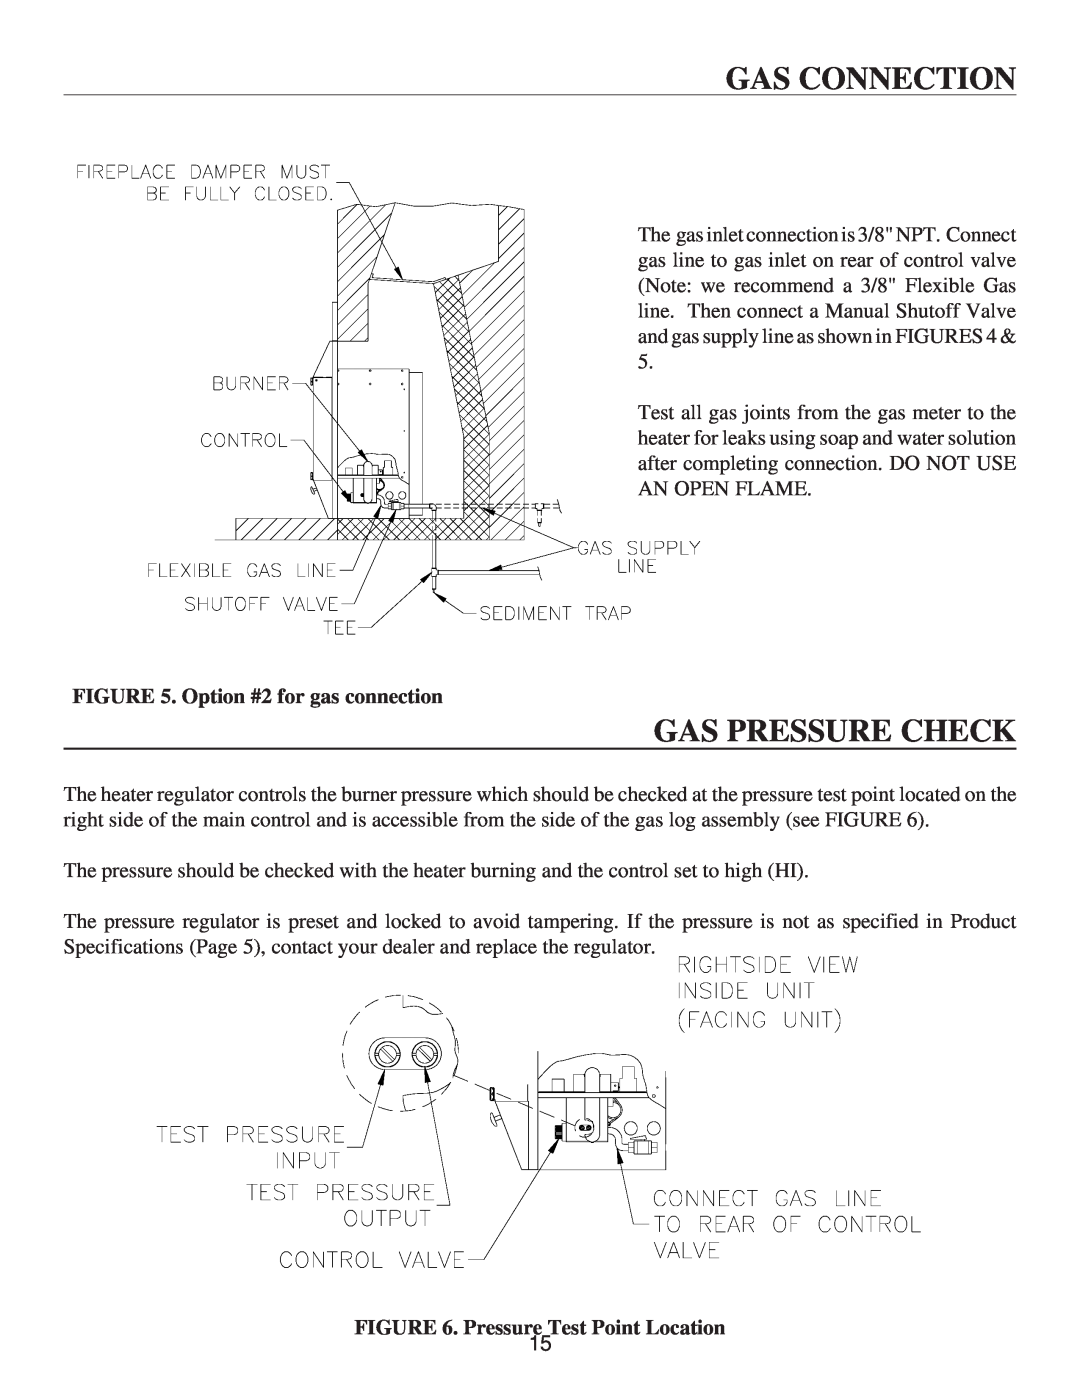 United States Stove VF30IL Gas Pressure Check, Gas Connection, Option #2 for gas connection, Pressure Test Point Location 